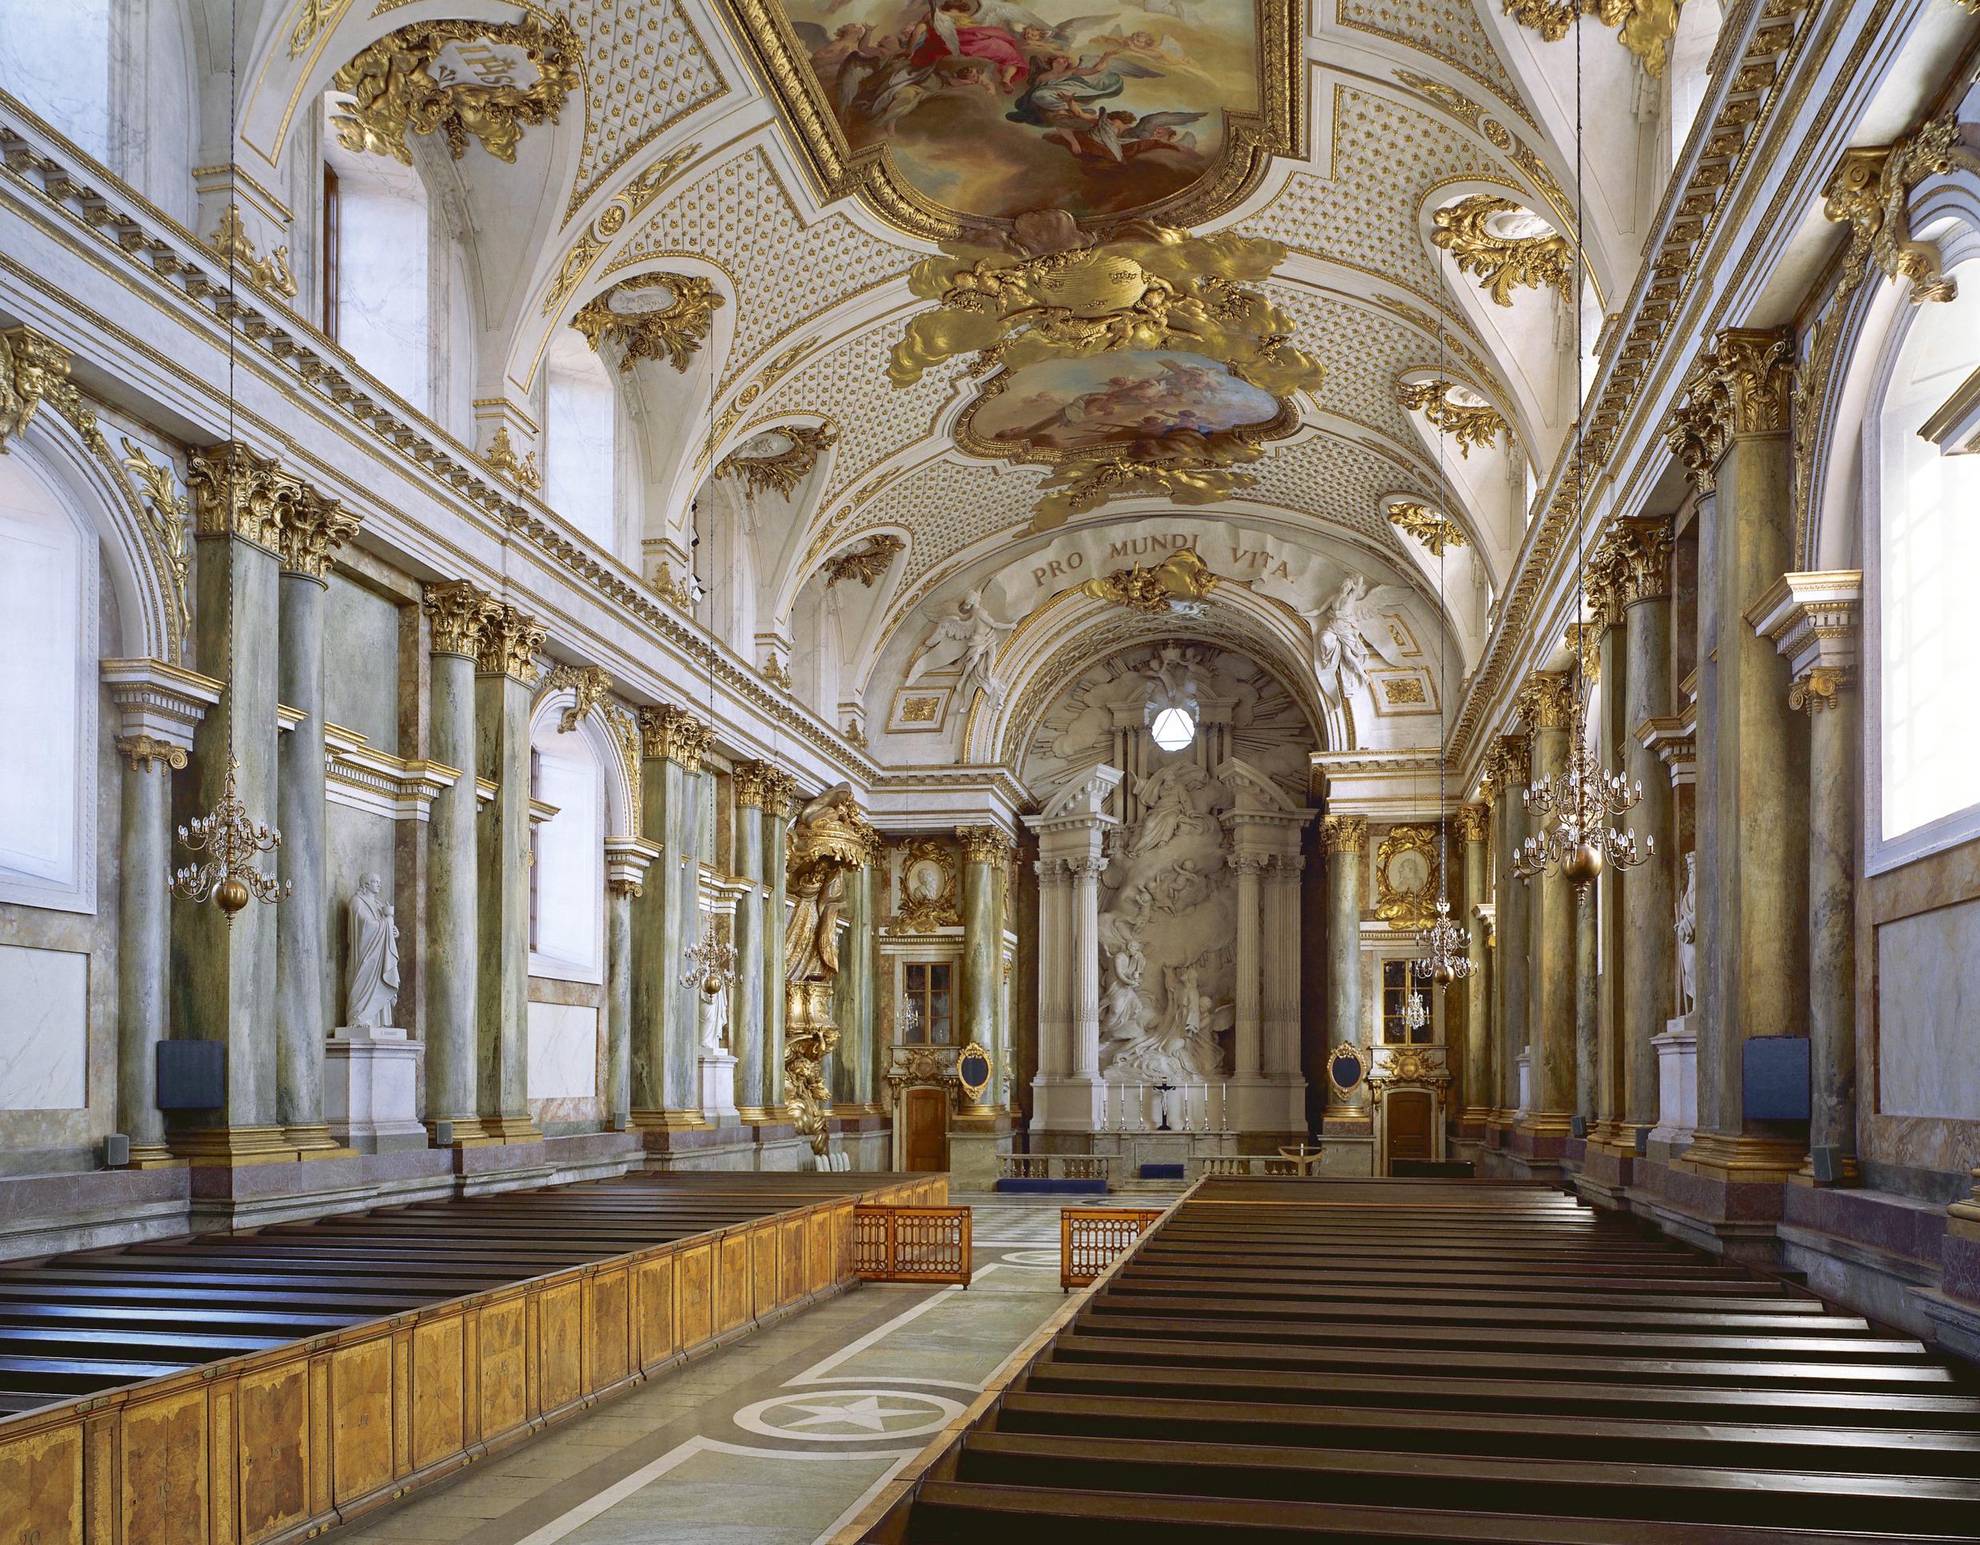 Het interieur van de Koninklijke Kapel heeft witte muren en gouden details. Sculpturen langs de muren en aan de voorkant, en een groot schilderij in het plafond.